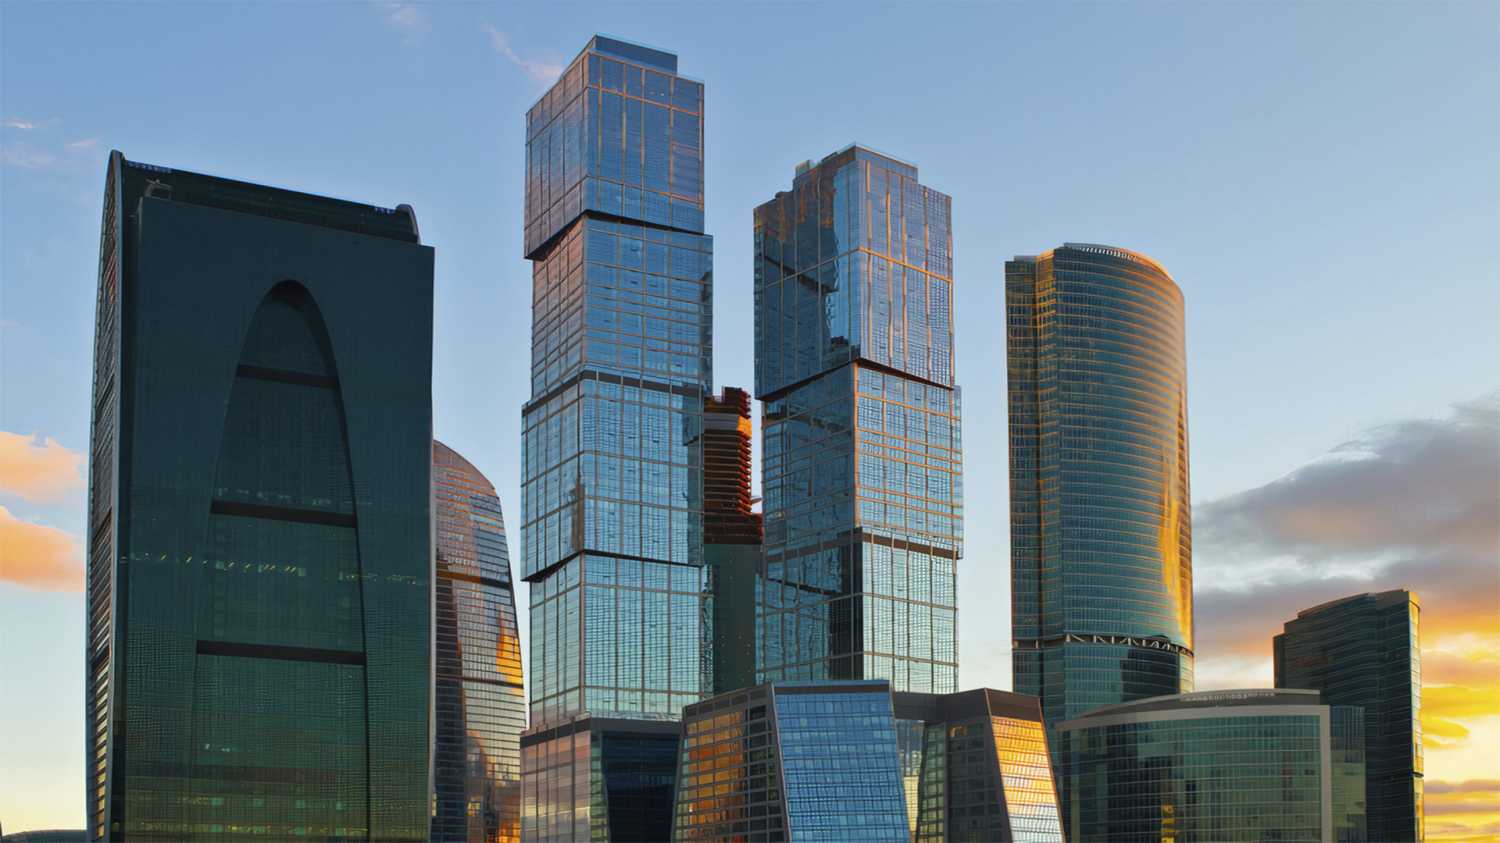 «Город Столиц» — два небоскреба премиум-класса с жилыми апартаментами